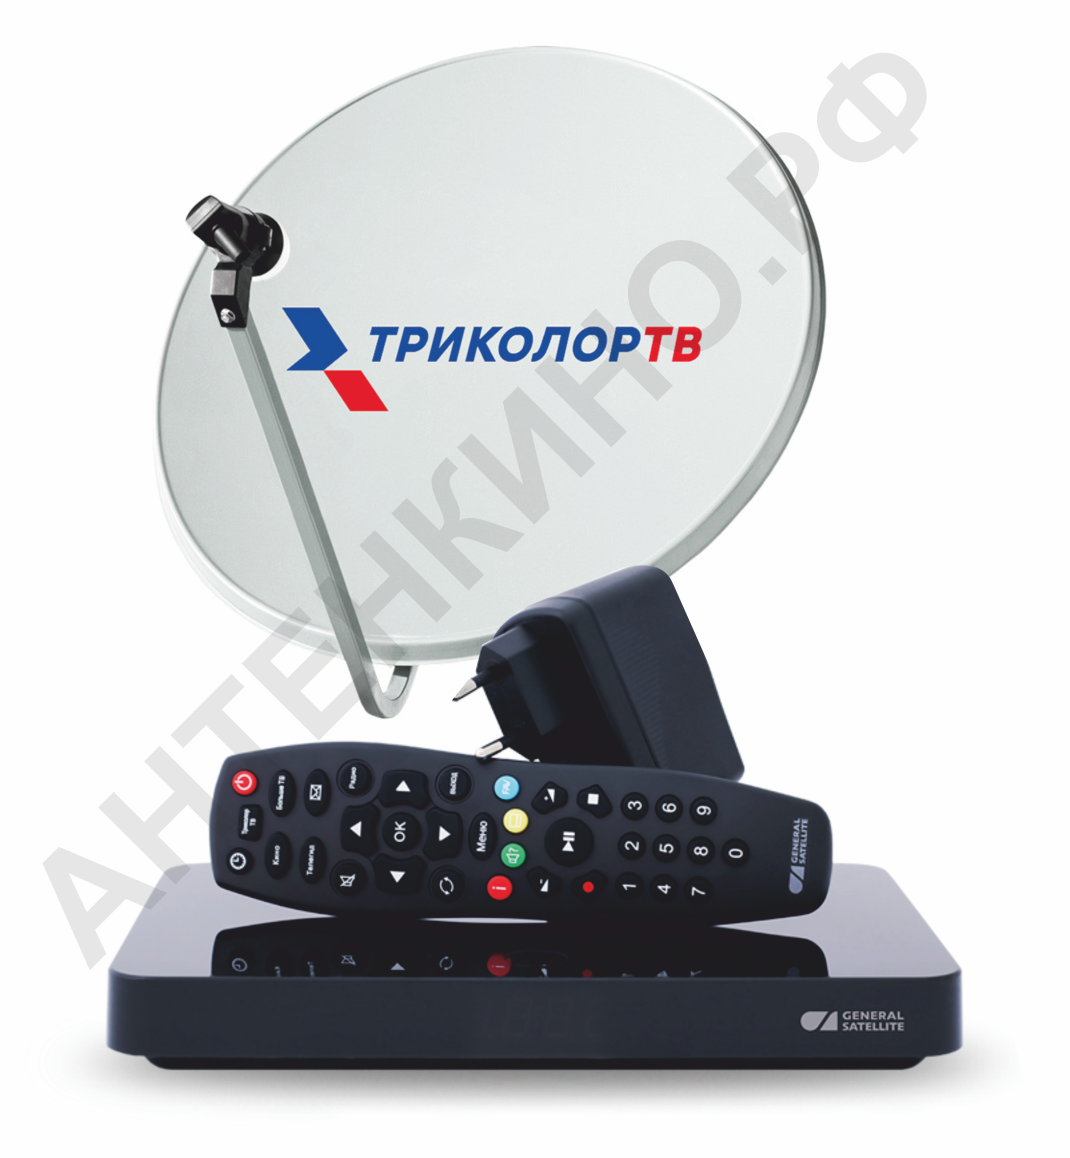 Комплект «Триколор ТВ» Ultra HD с ресивером GS 528